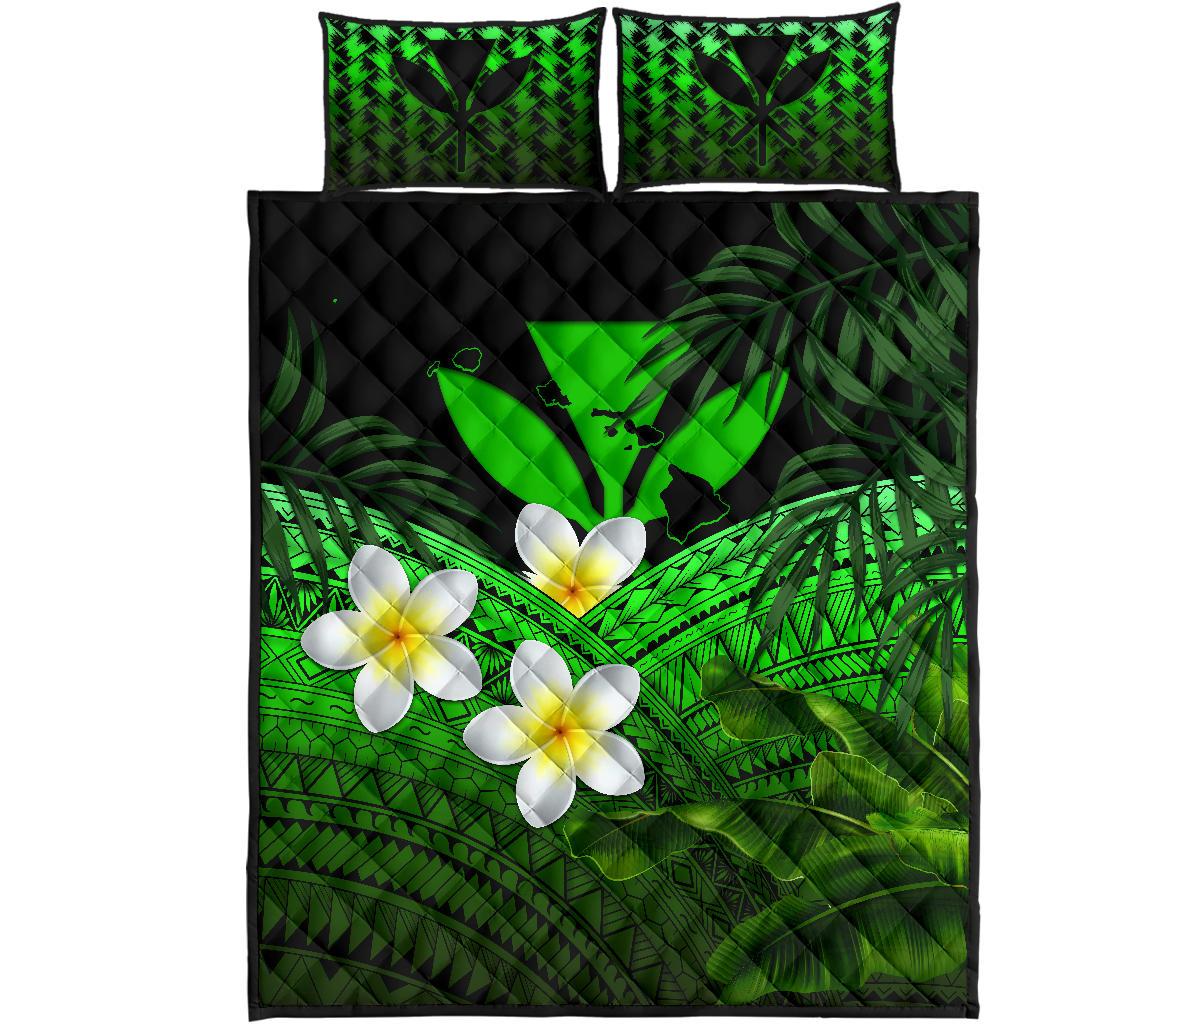 Kanaka Maoli (Hawaiian) Quilt Bed Set,, Polynesian Plumeria Banana Leaves Green Green - Polynesian Pride